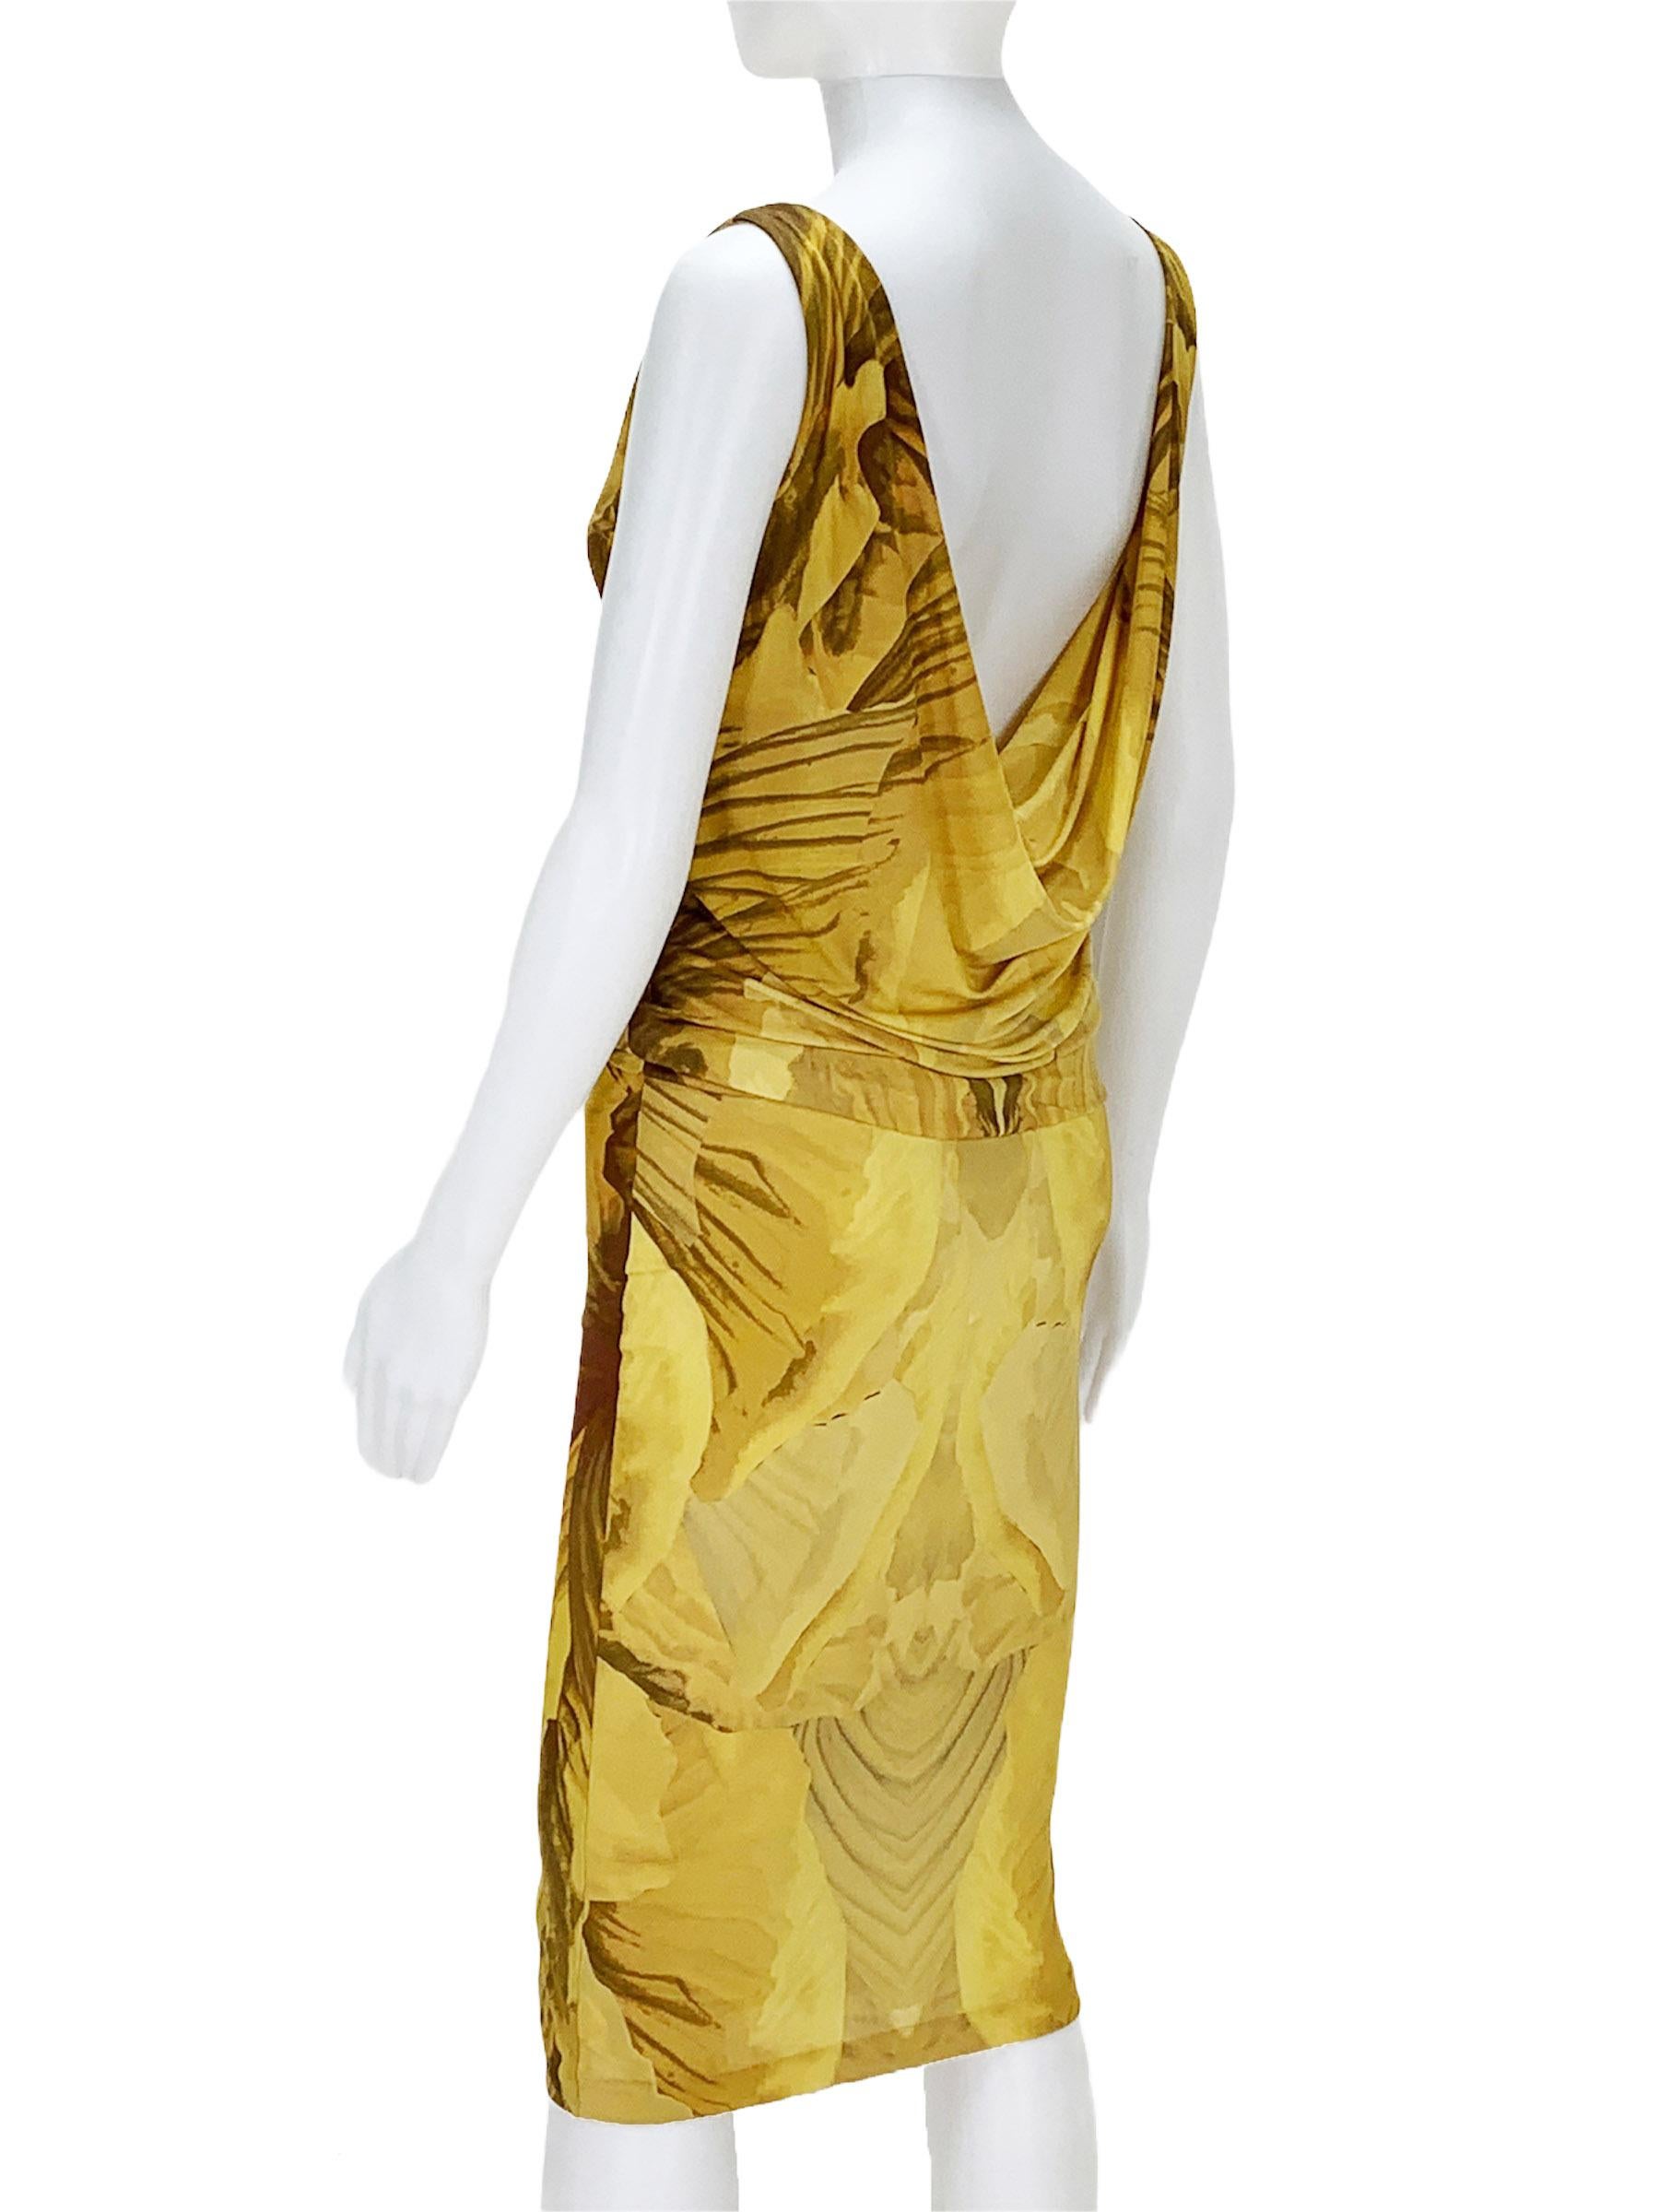 Marron Alexander McQueen - Robe dos nu extensible, collection Plato's Atlantis, printemps-été 2010, taille 40 en vente